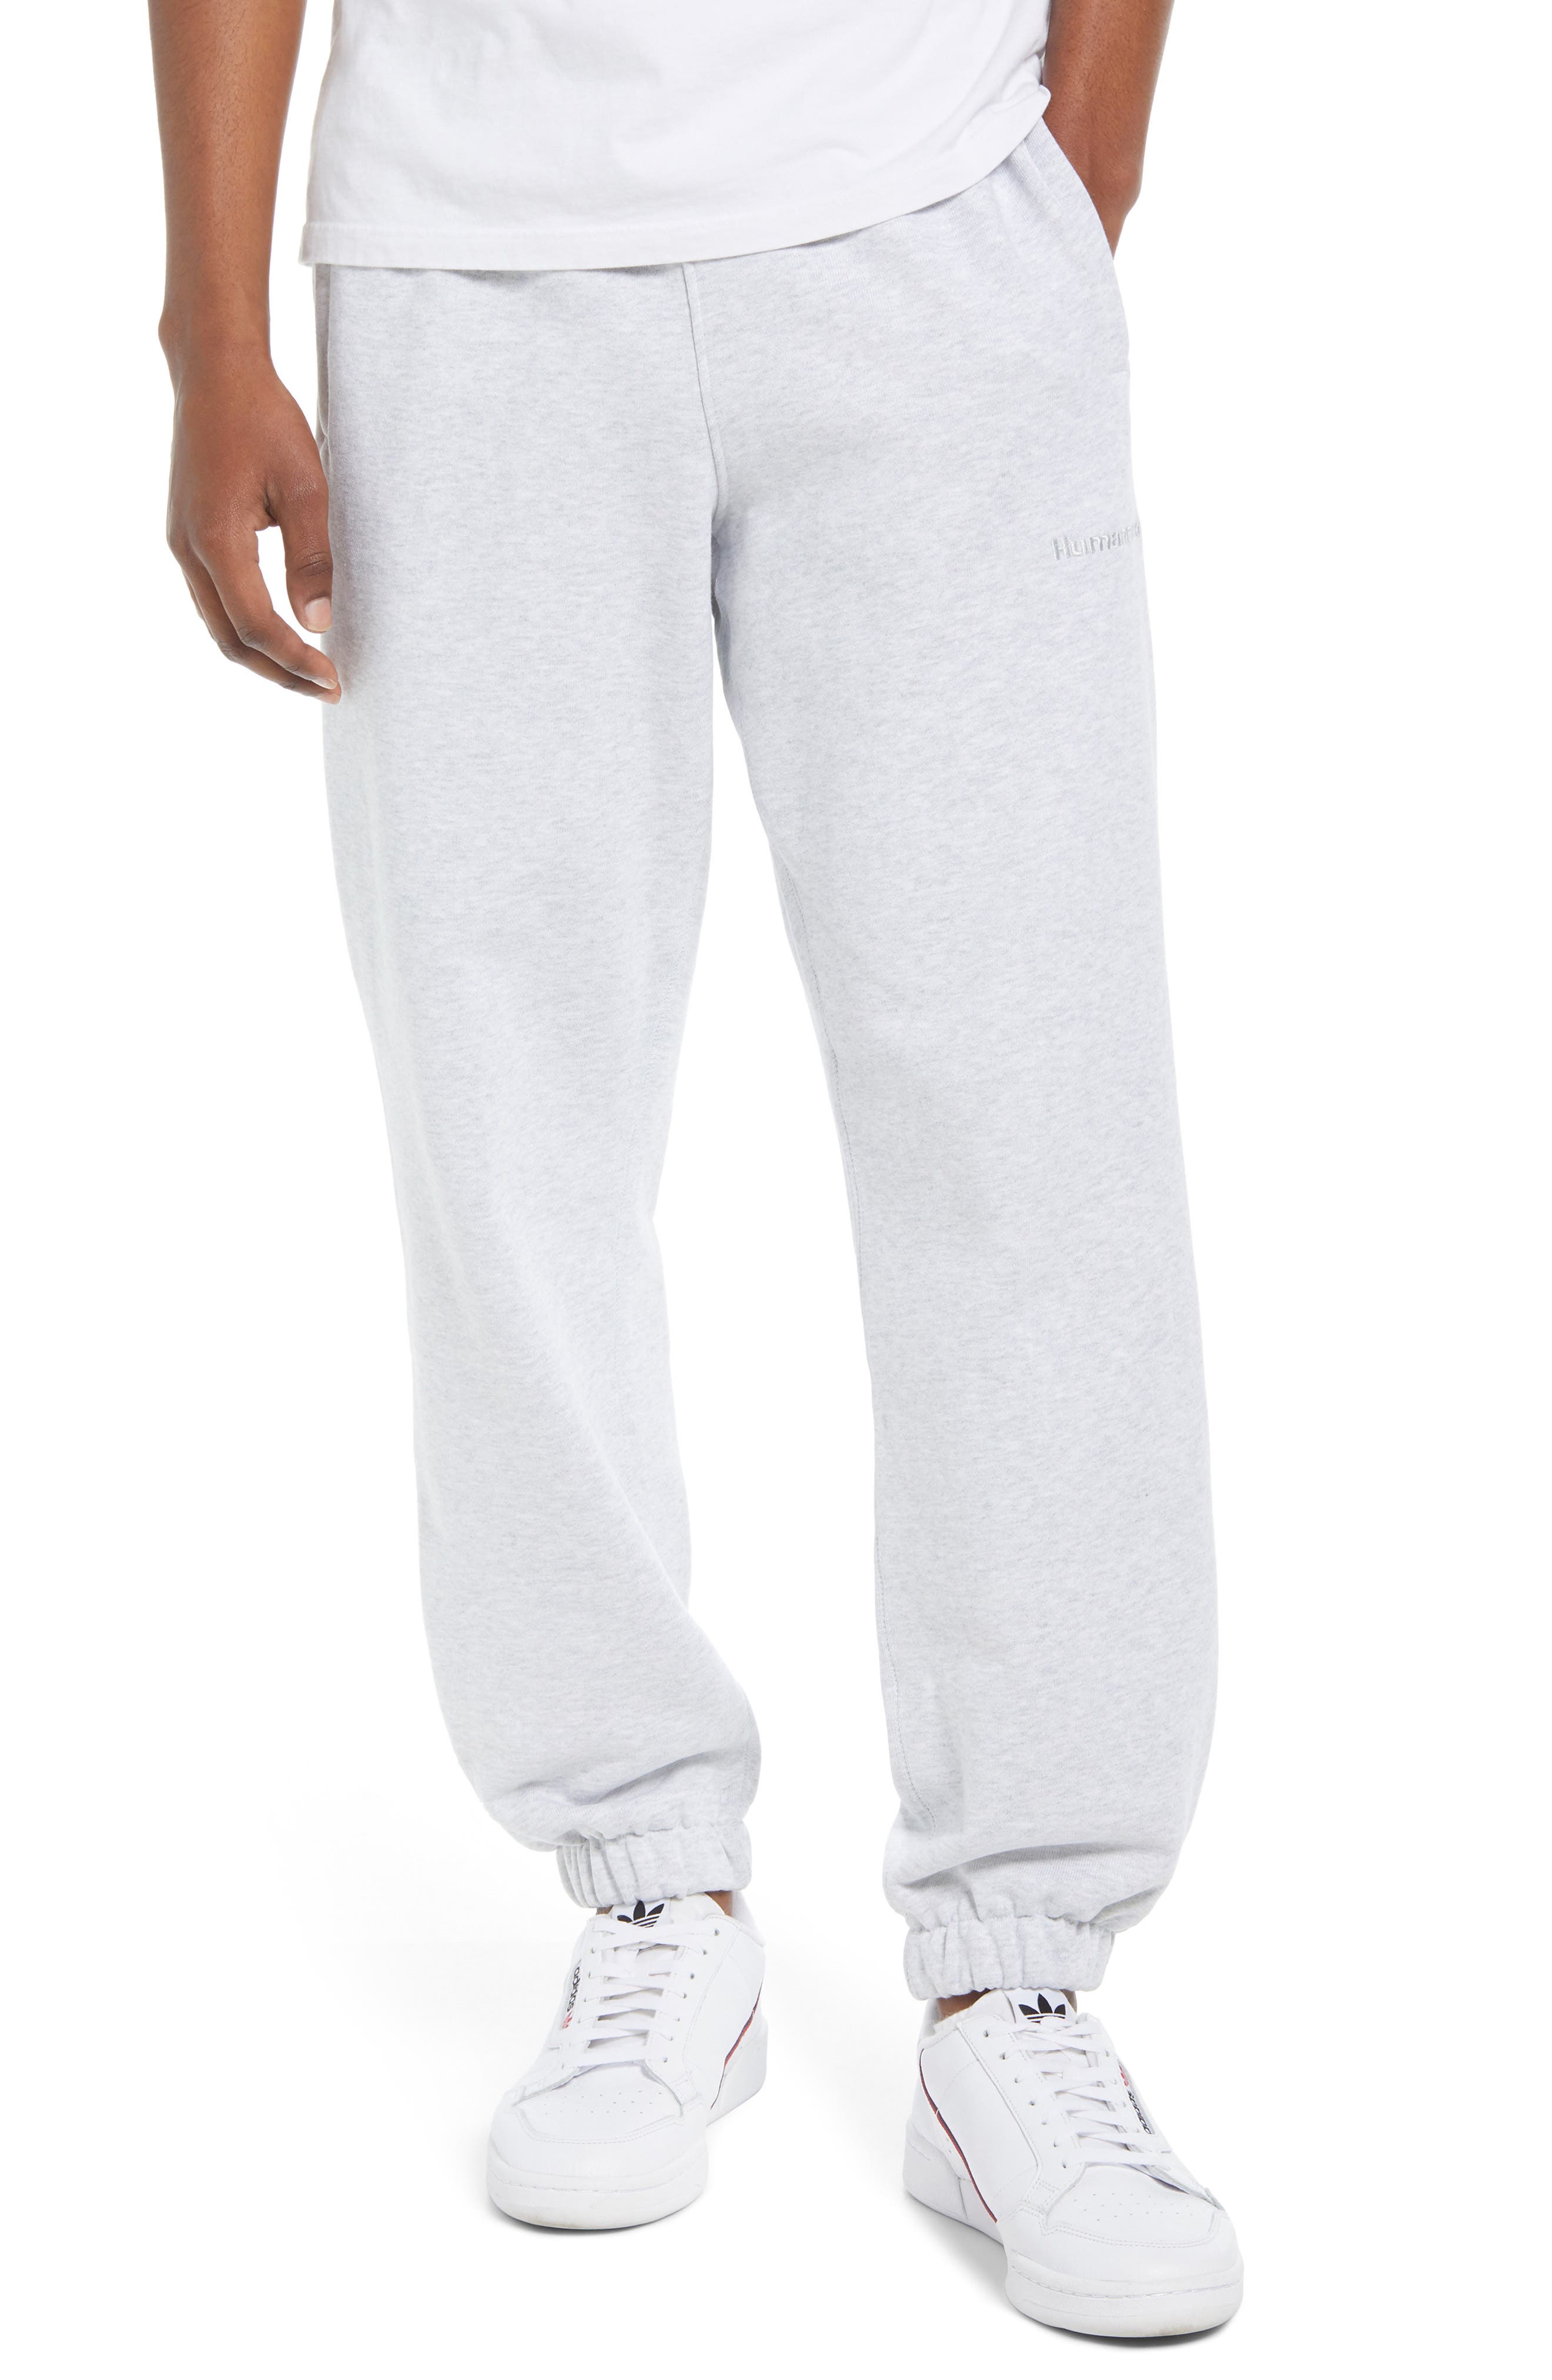 Adidas Originals x Pharrell Williams Unisex Sweatpants